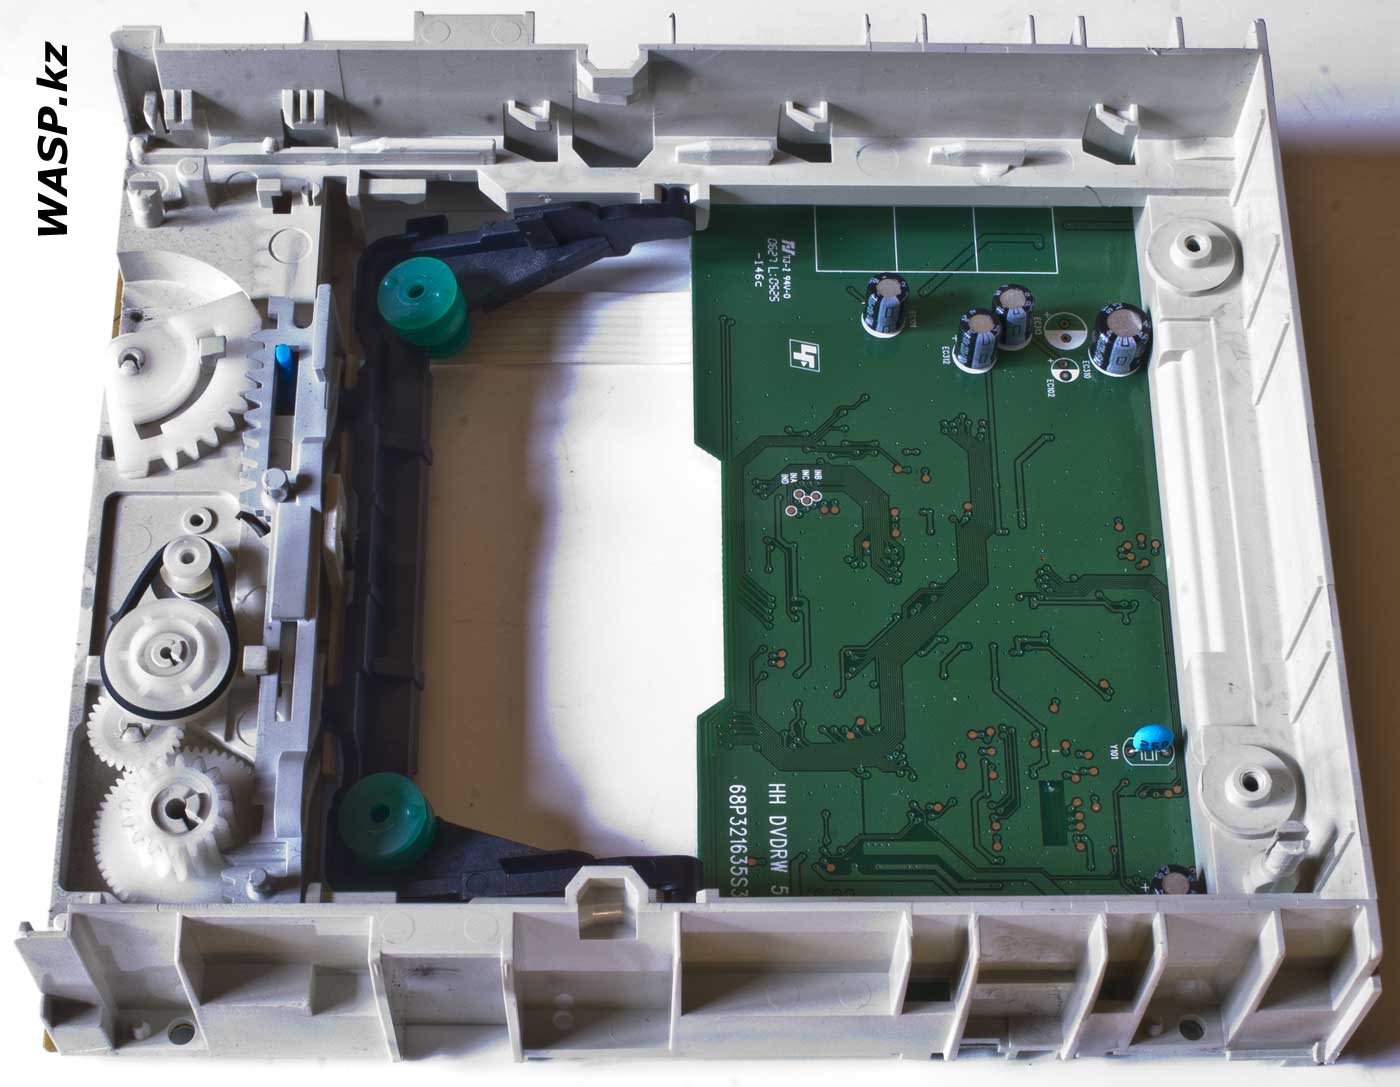 LITE-ON SHM-165P6S ремонт оптического привода, как и что